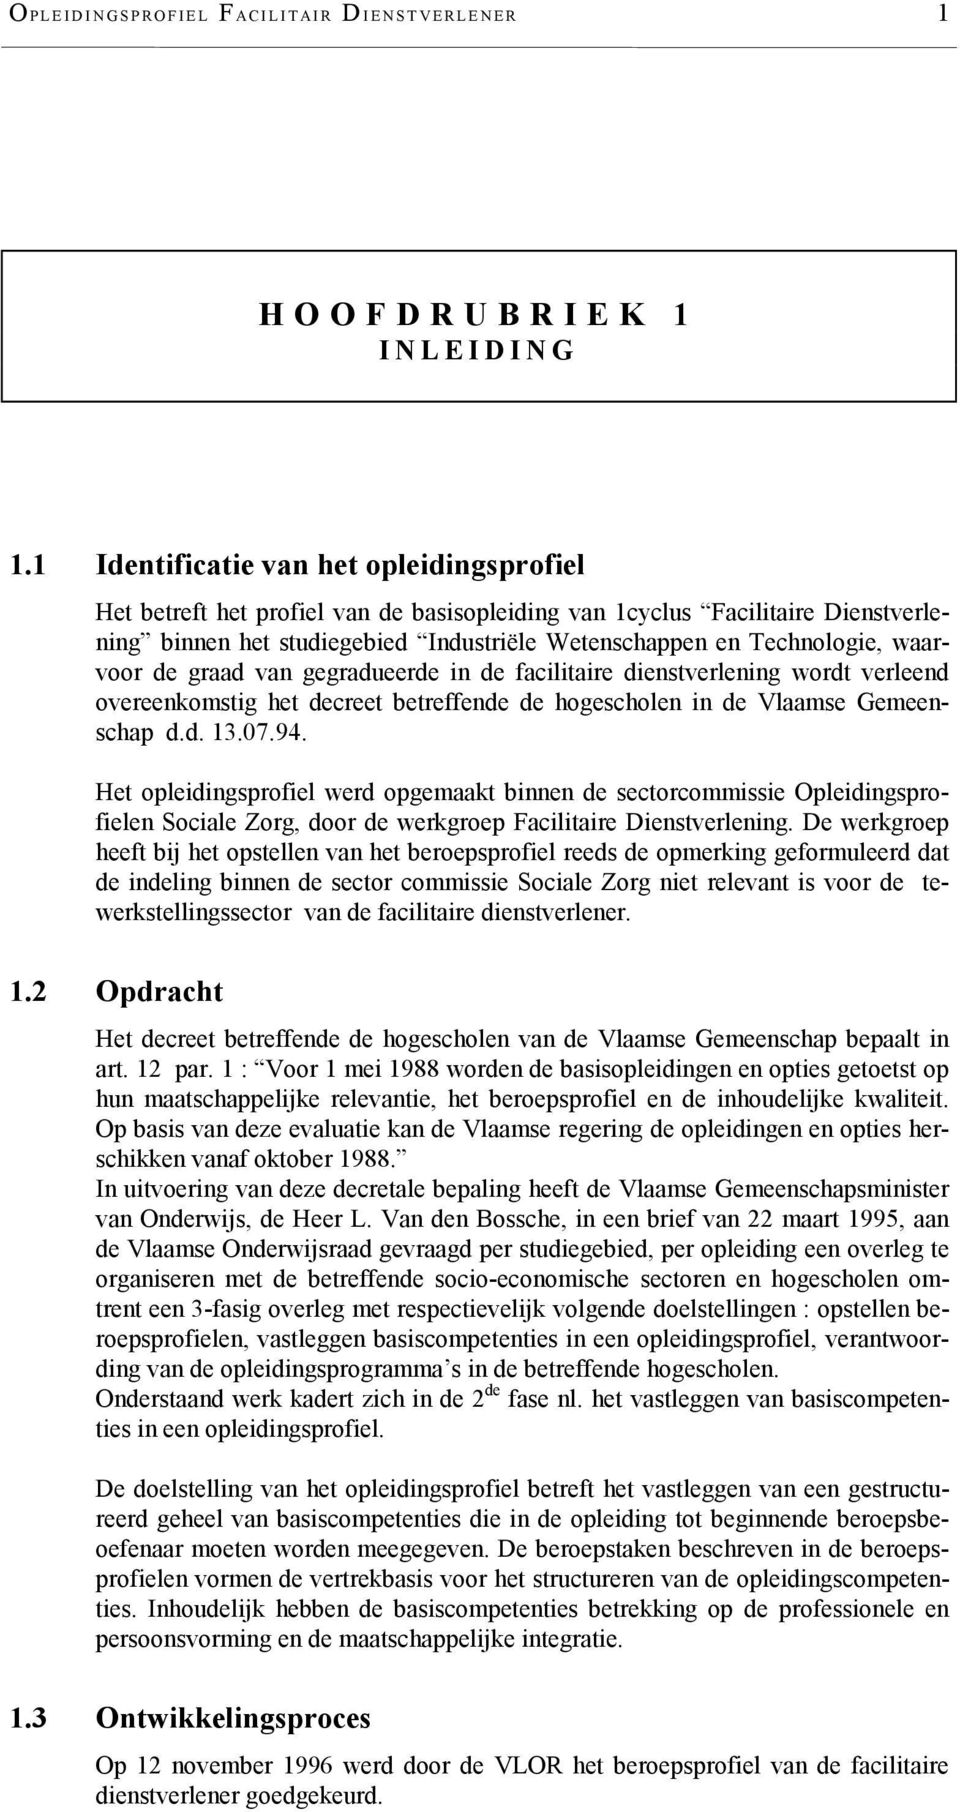 waarvoor de graad van gegradueerde in de facilitaire dienstverlening wordt verleend overeenkomstig het decreet betreffende de hogescholen in de Vlaamse Gemeenschap d.d. 13.07.94.